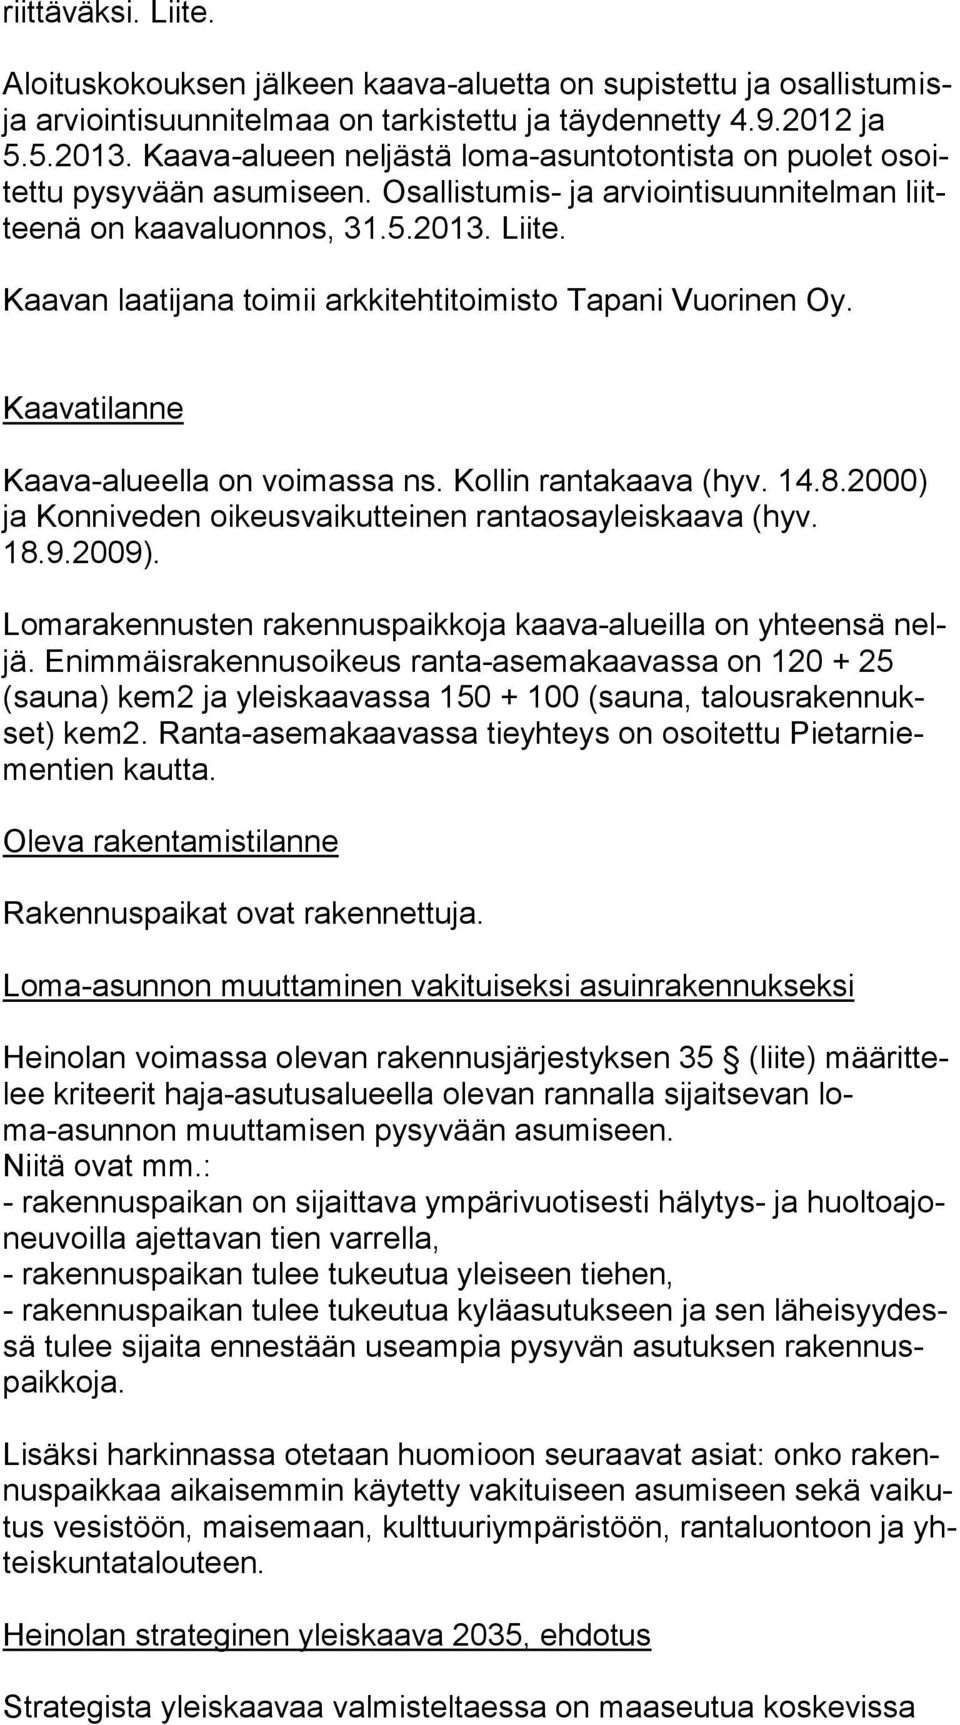 Kaavan laatijana toimii arkkitehtitoimisto Tapani Vuorinen Oy. Kaavatilanne Kaava-alueella on voimassa ns. Kollin rantakaava (hyv. 14.8.2000) ja Konniveden oikeusvaikutteinen rantaosayleiskaava (hyv.